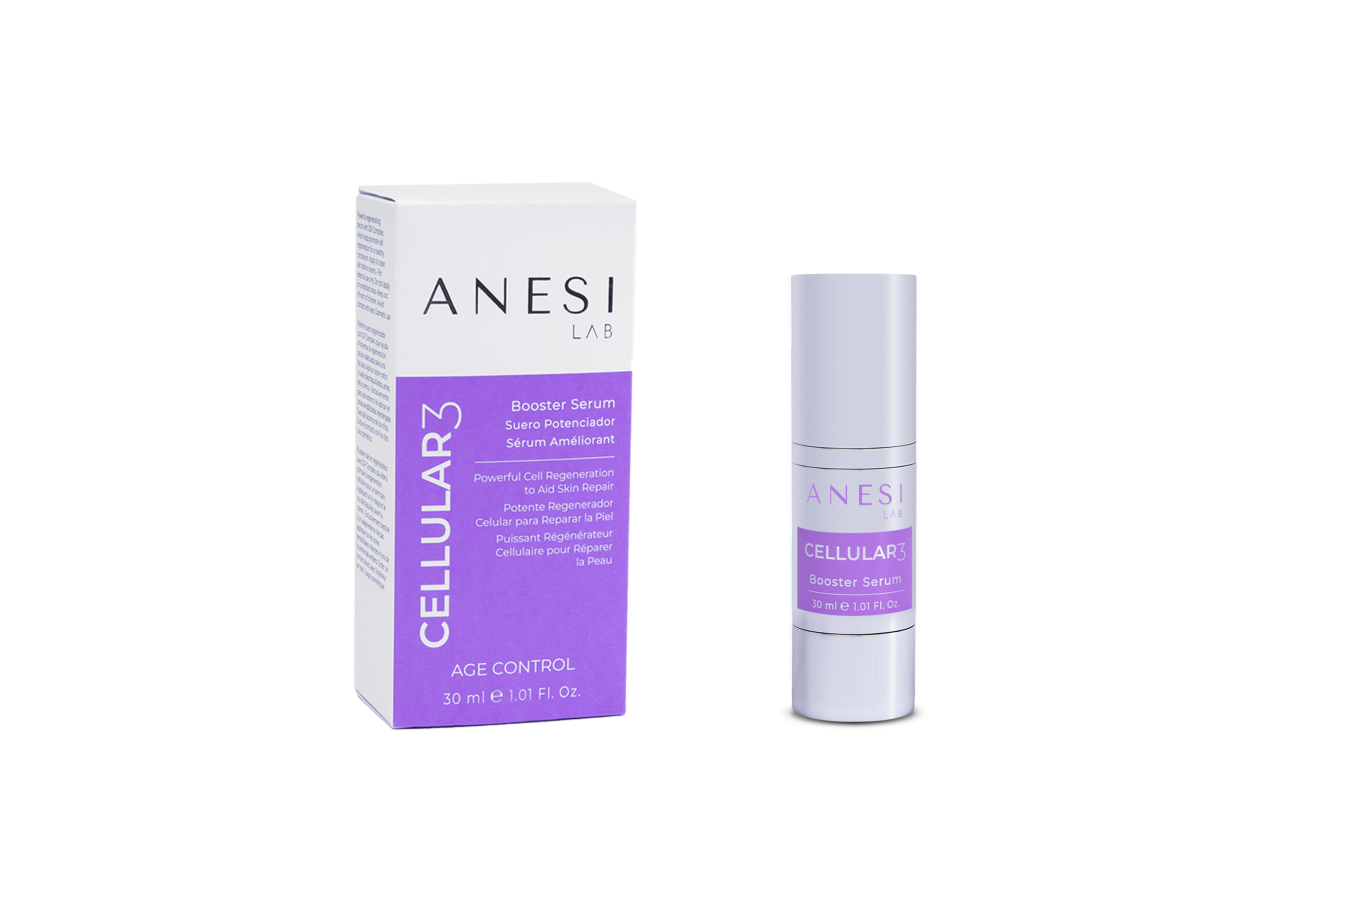 Anesi Institute Cellular 3 rejuvenating face serum 30ml